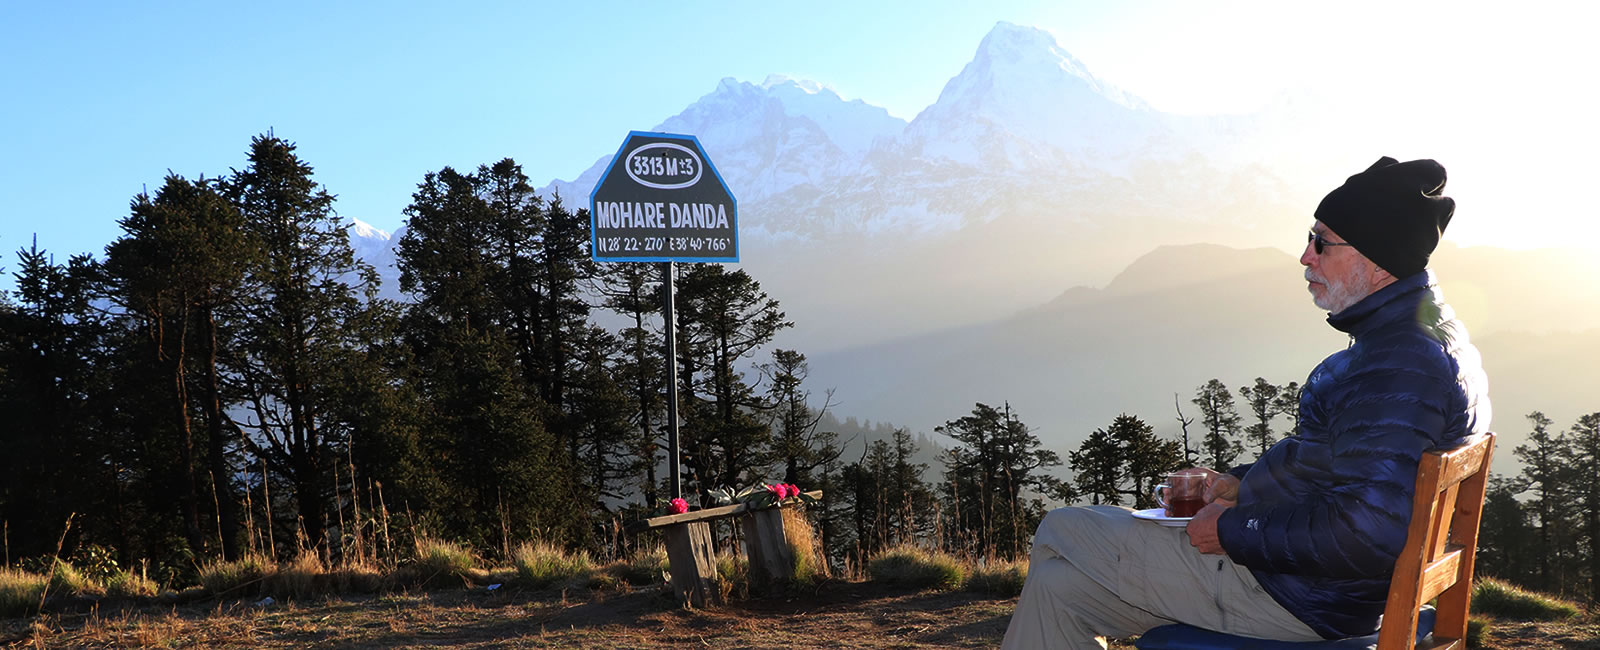 trekking-morare-danda-new-trekking-route-in-annapurna 